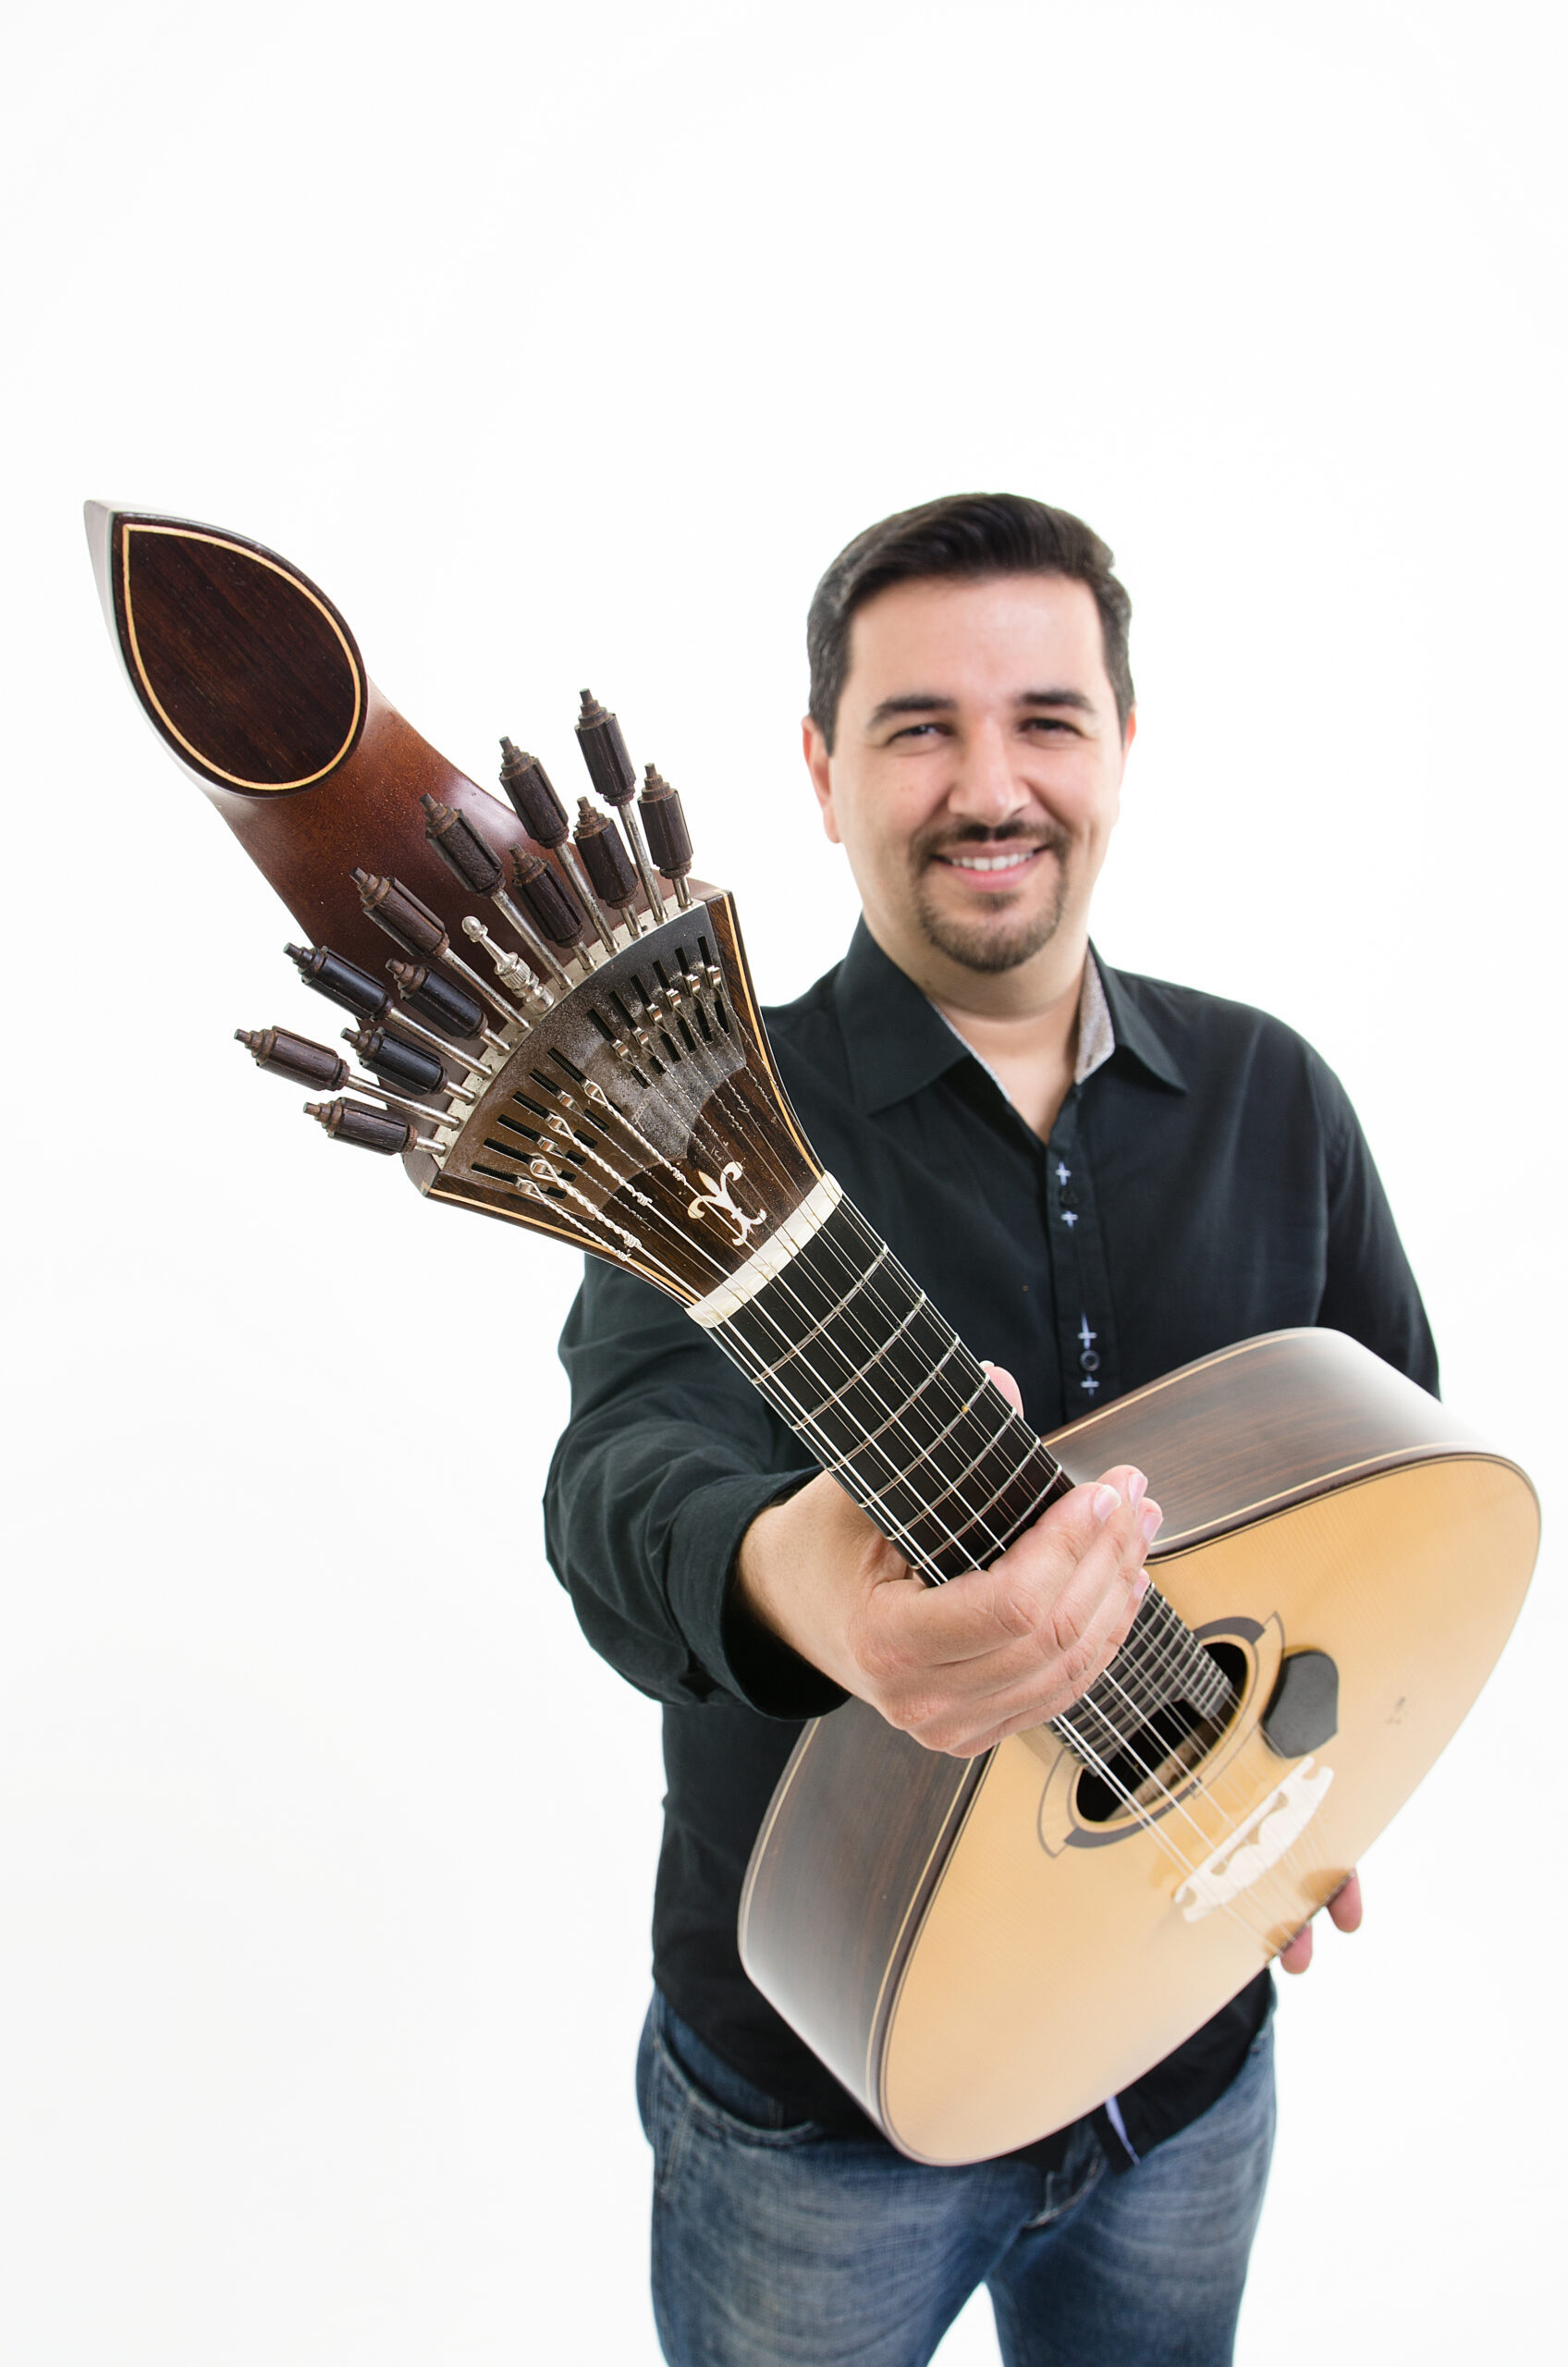 Projeto ‘Clássicos em Cena’ apresenta os encantos da Guitarra Portuguesa no dia 20 de março em Itapira